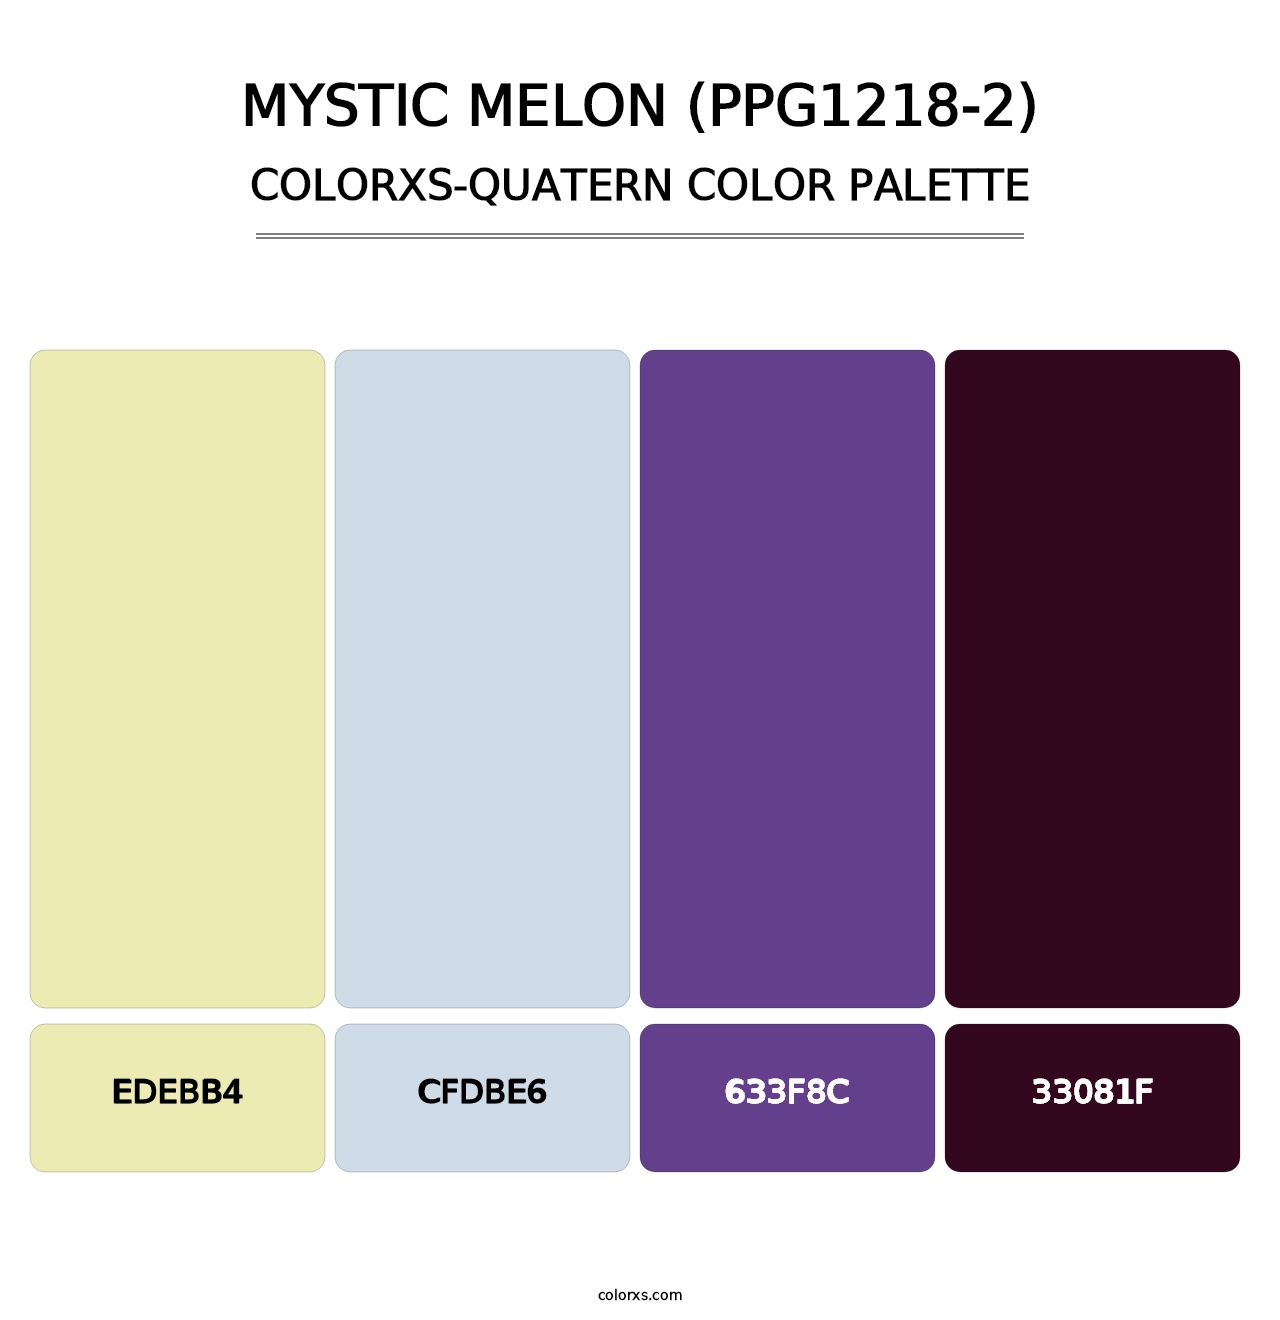 Mystic Melon (PPG1218-2) - Colorxs Quatern Palette